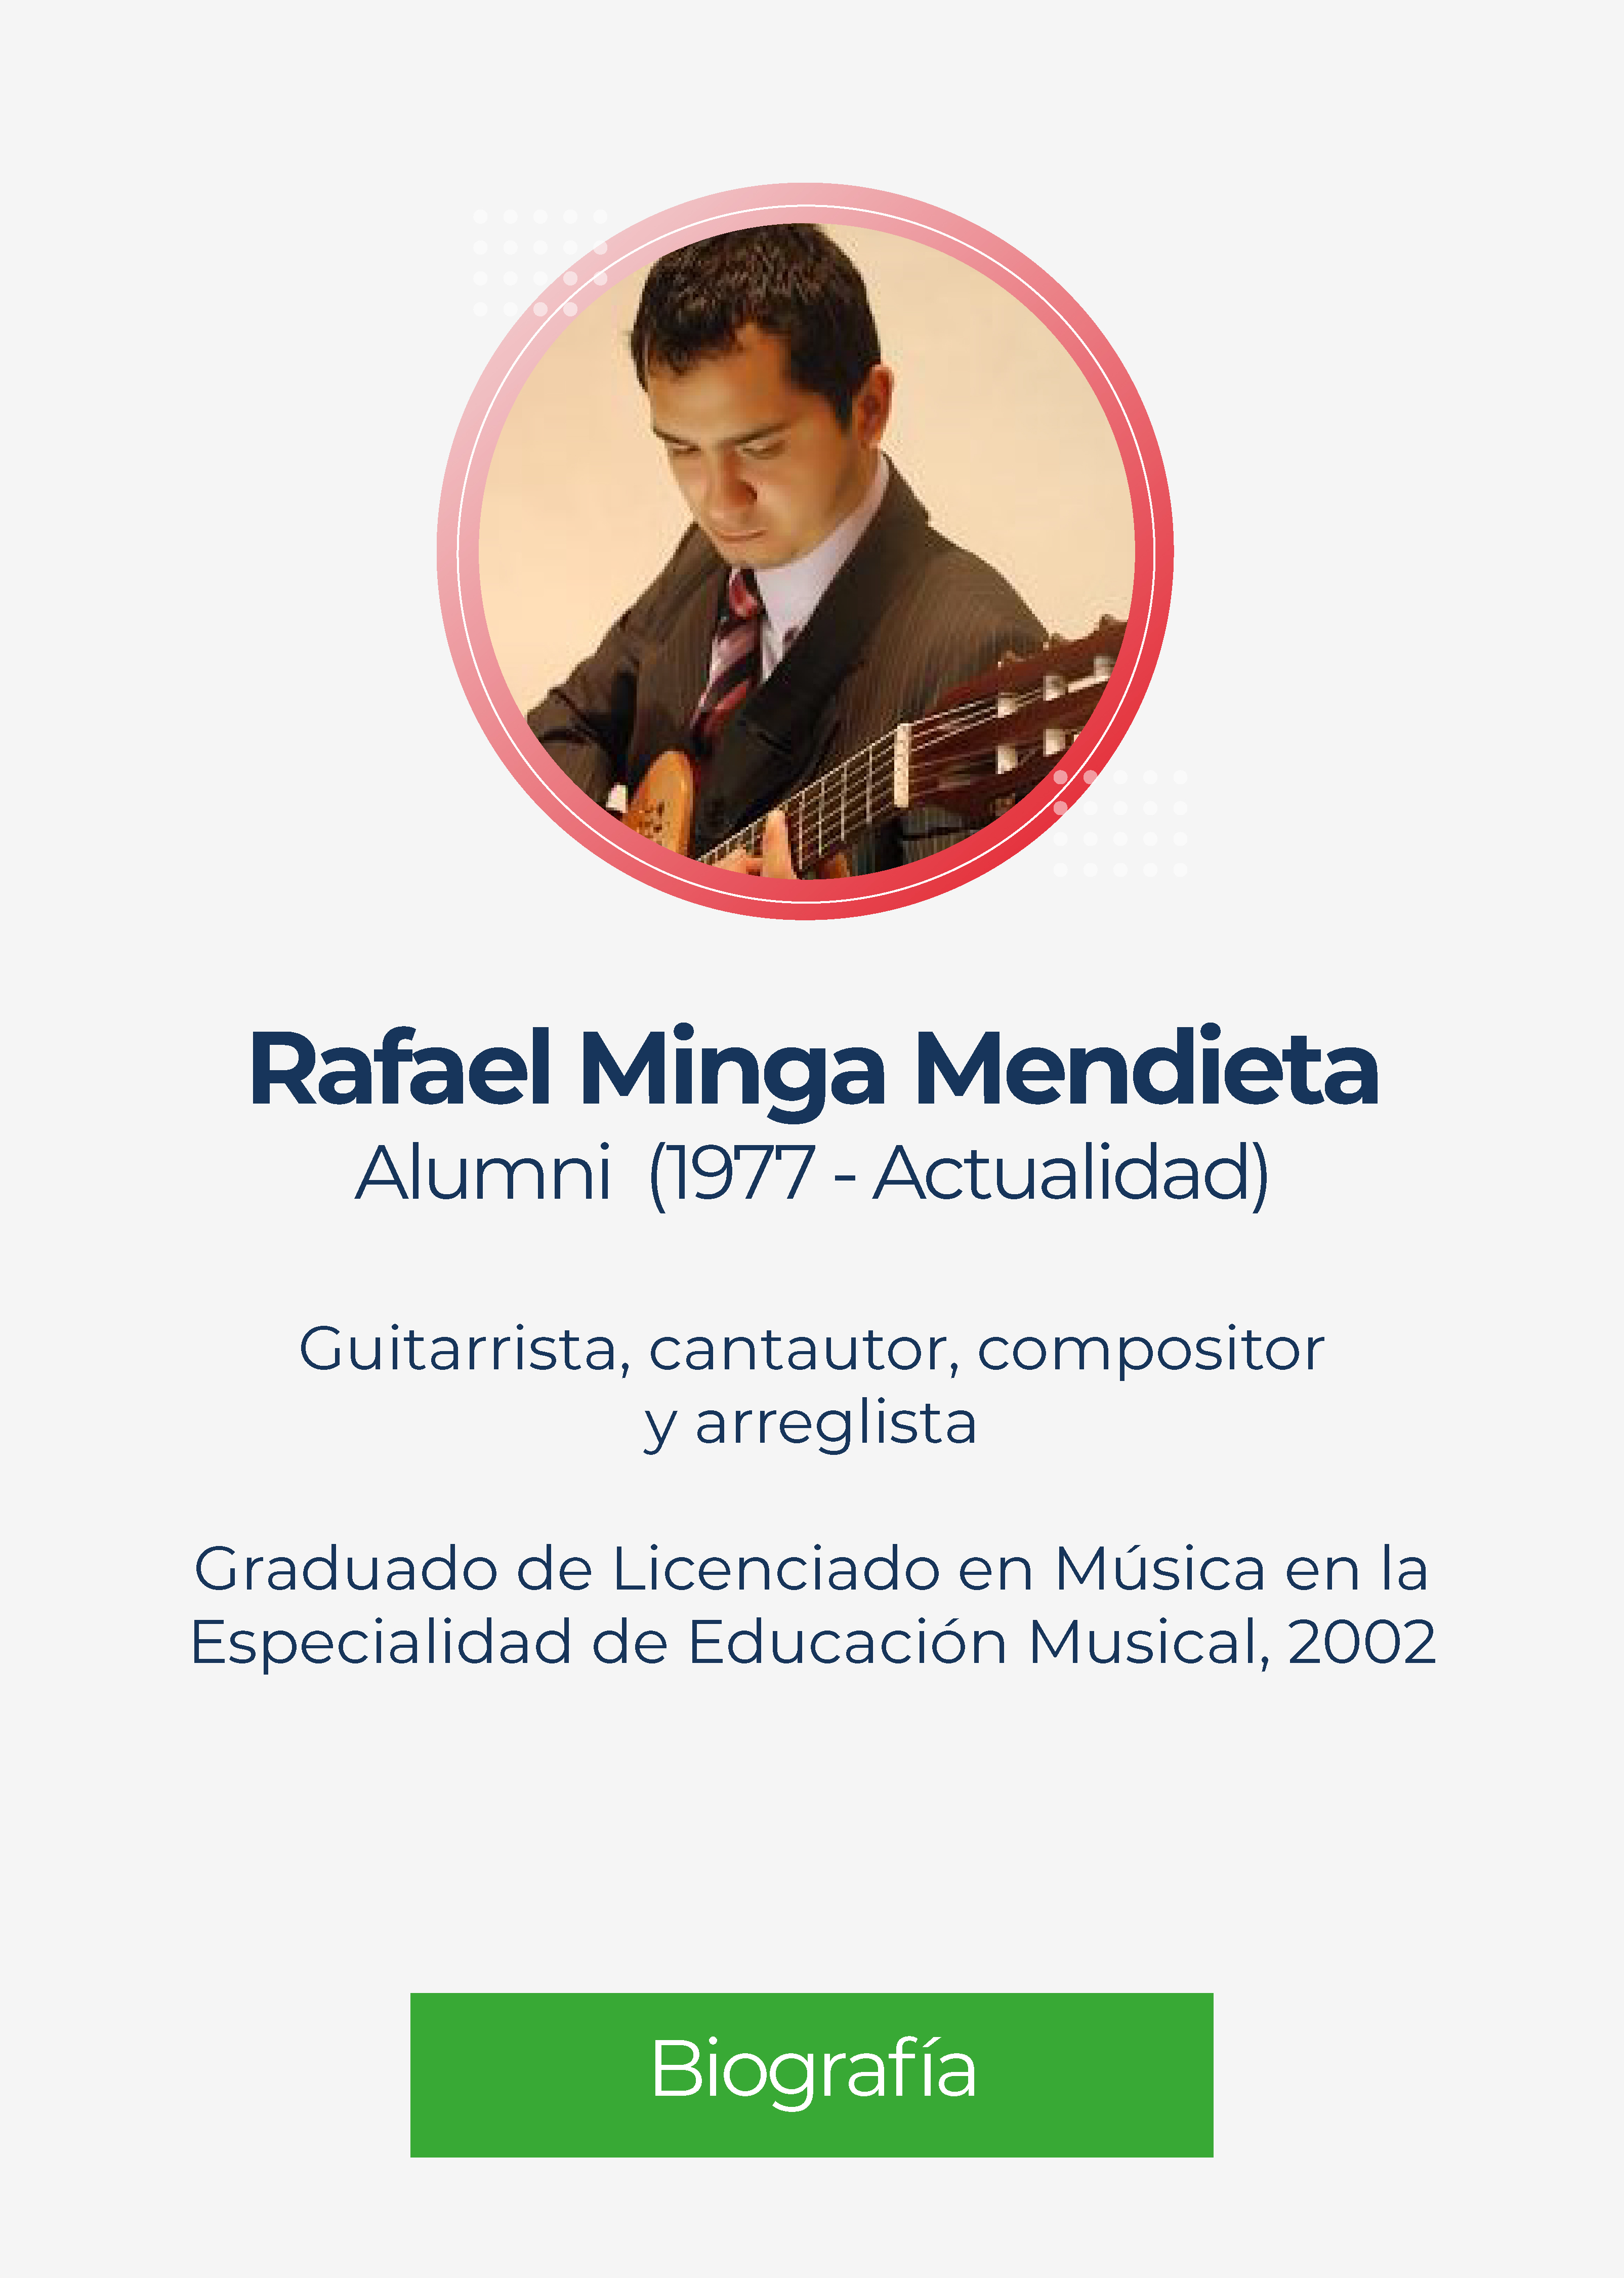 Rafael Oswaldo Minga Mendieta